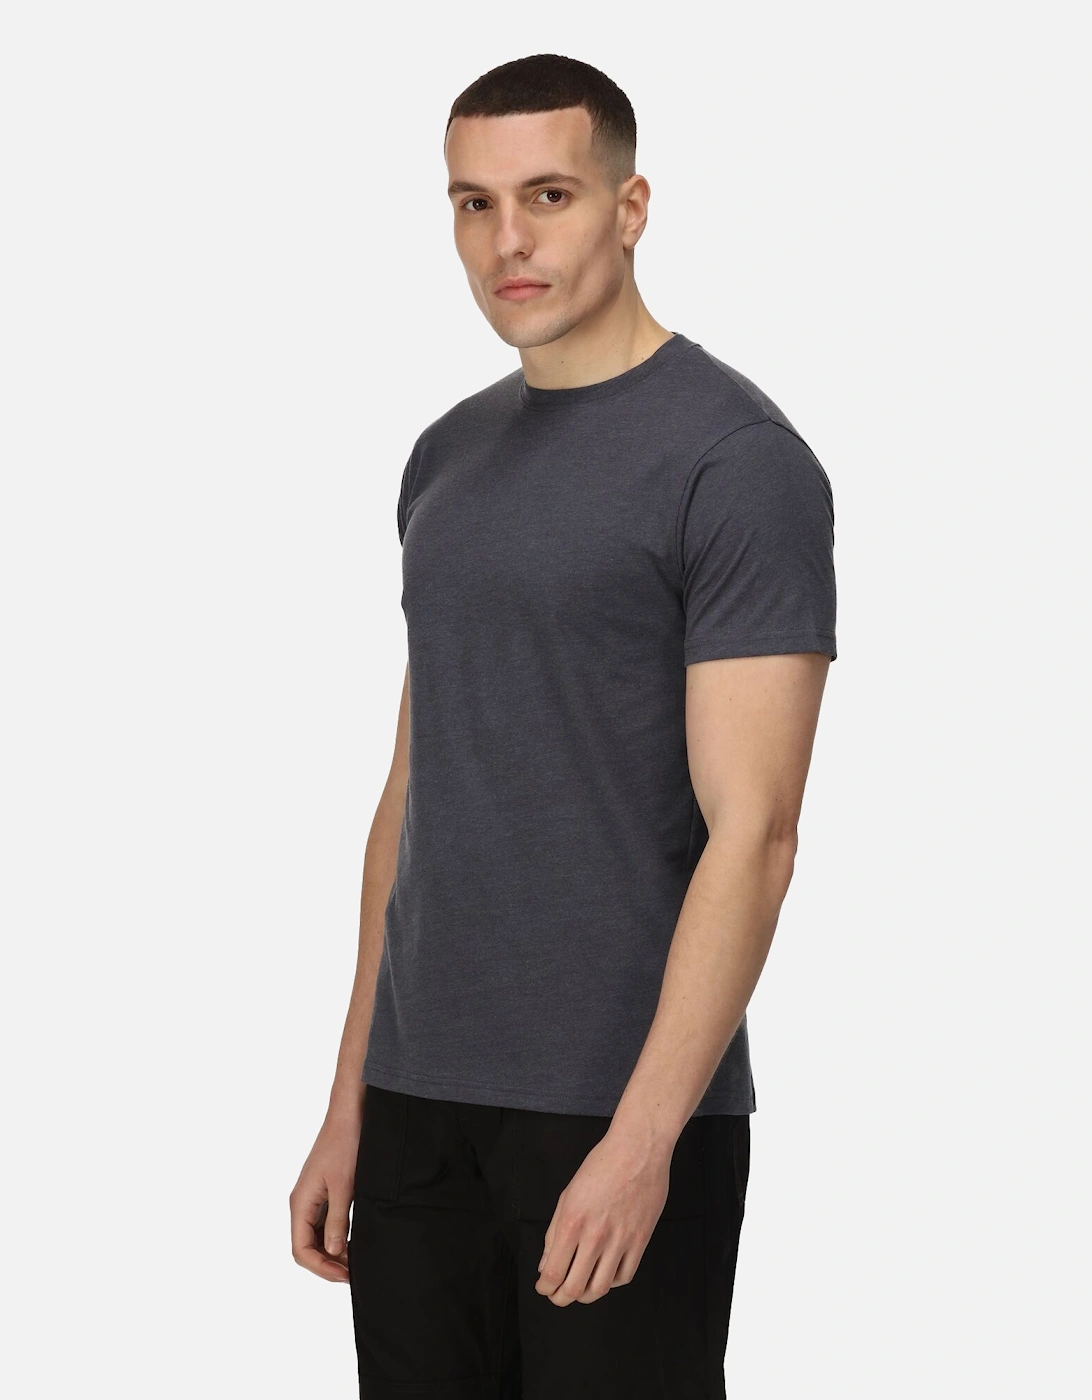 Mens Pro Cotton Soft Touch T-Shirt